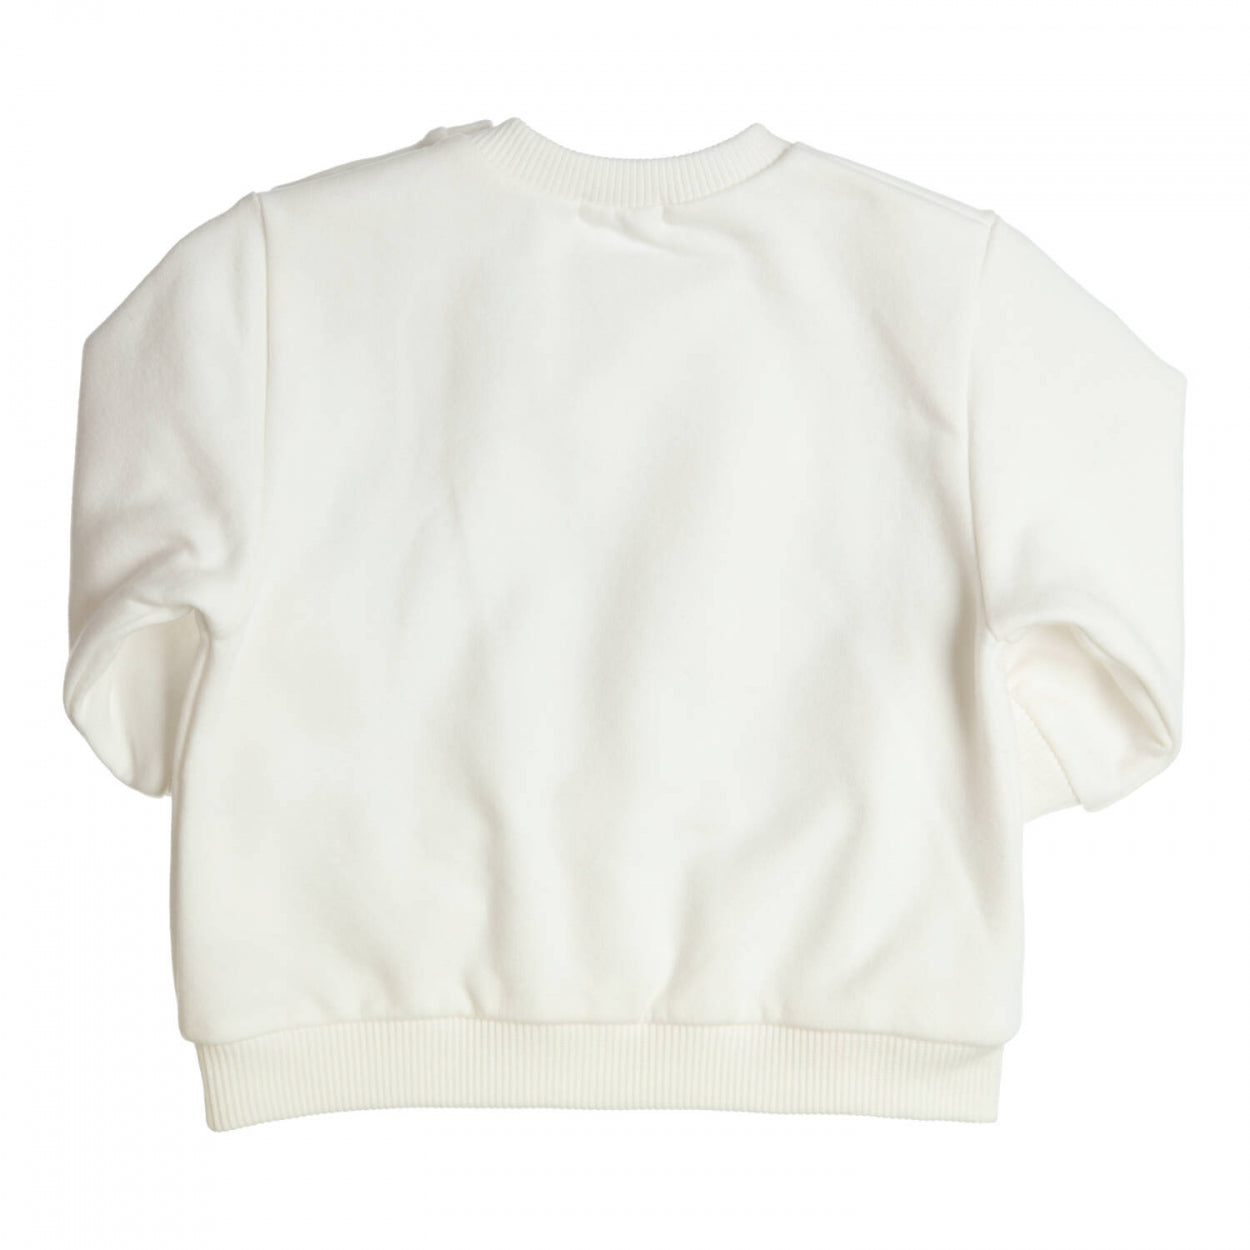 Meisjes Sweater Carbondoux van Gymp in de kleur Off White in maat 86.